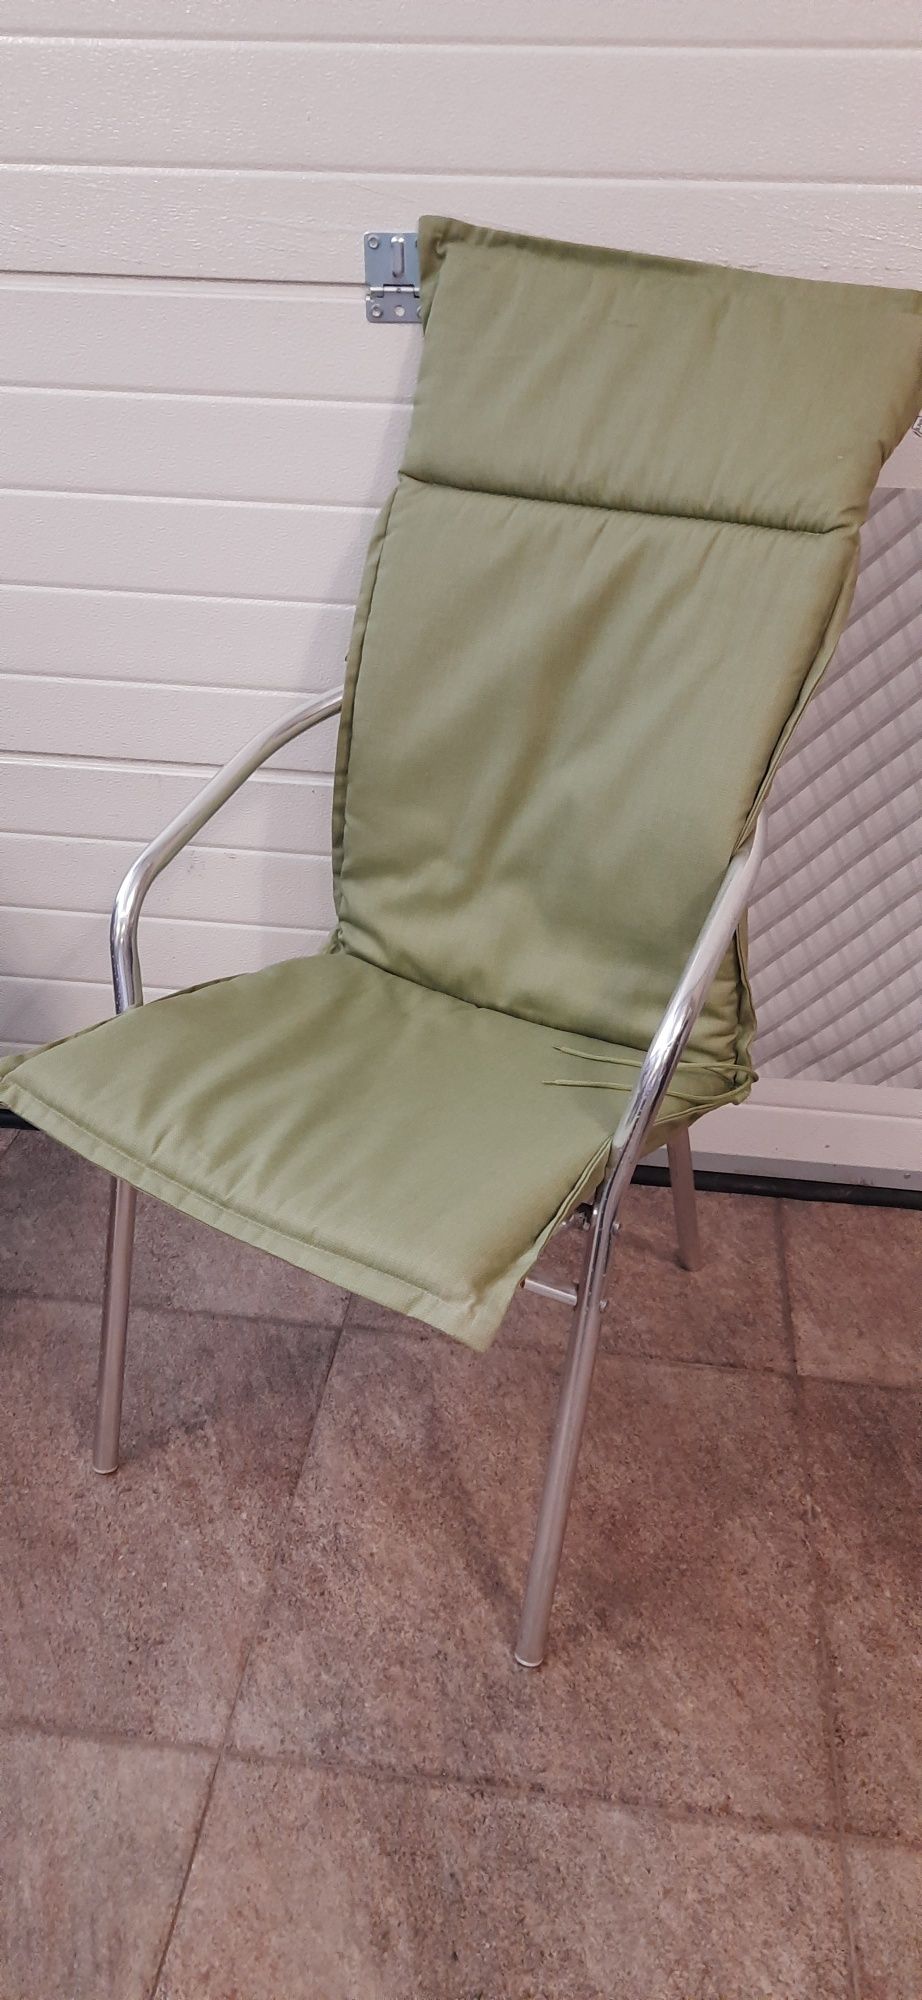 Матрац матрас лежак крісло подушка Садова